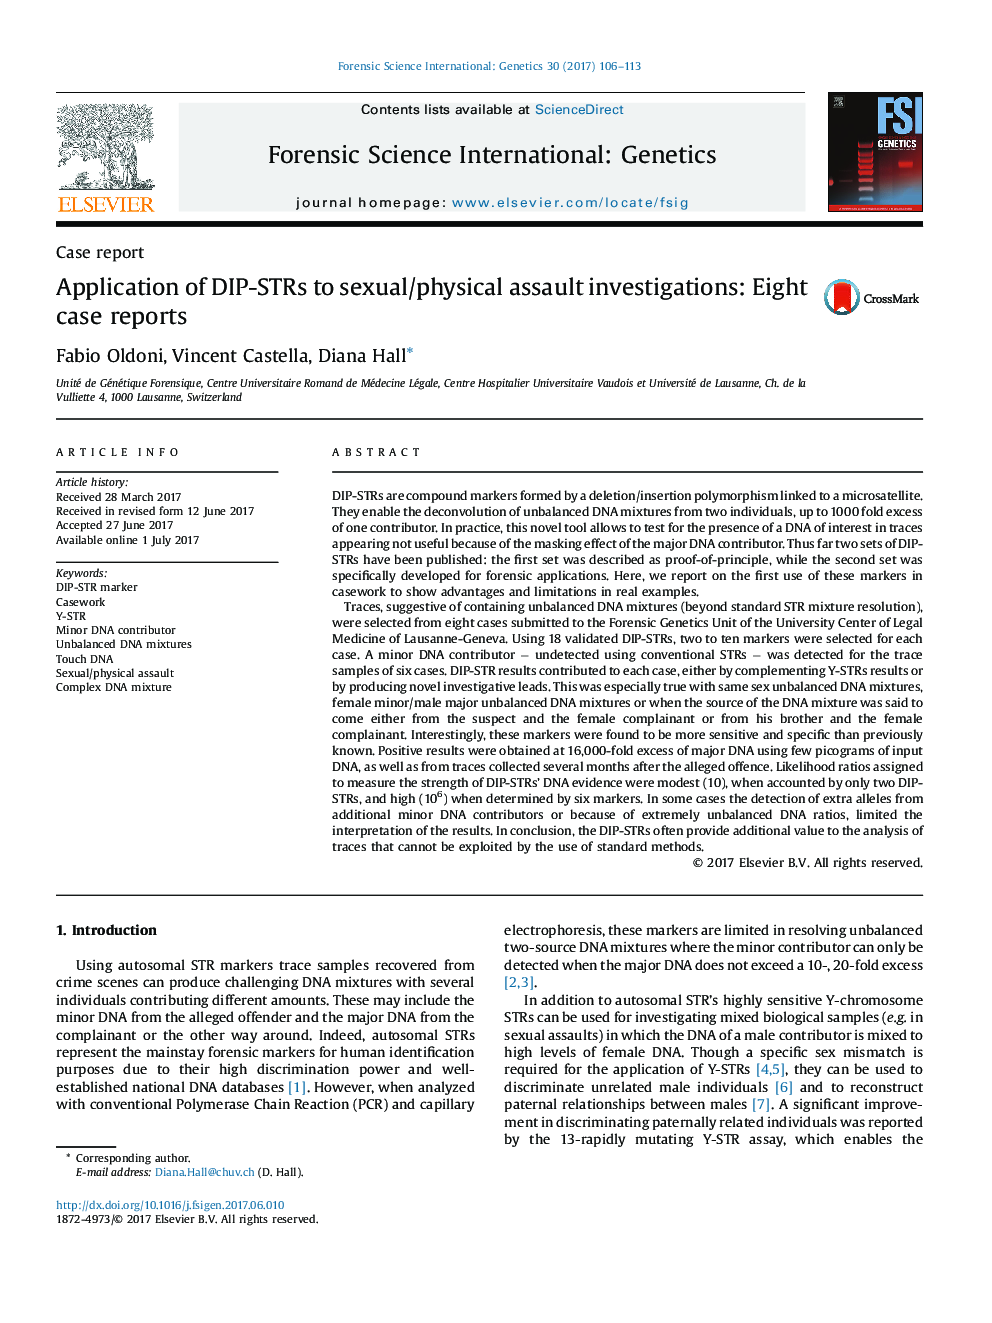 استفاده از DIP-STR ها به تحقیقات ضد و نقیض فیزیکی: گزارش هشت مورد